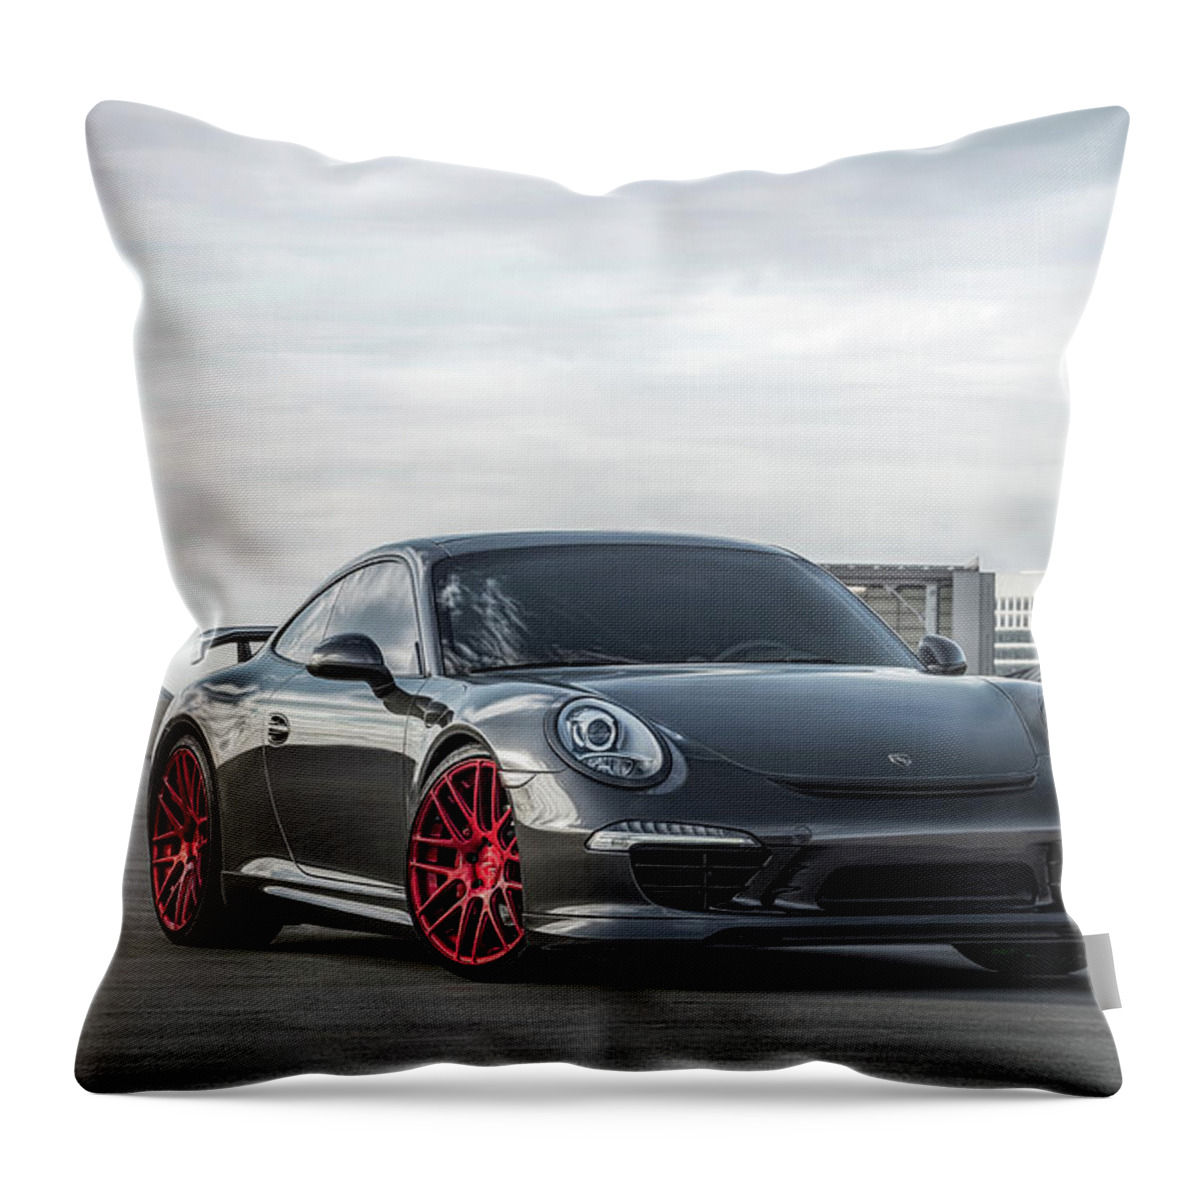 Porsche Throw Pillow featuring the digital art Porsche 991 911 by Douglas Pittman